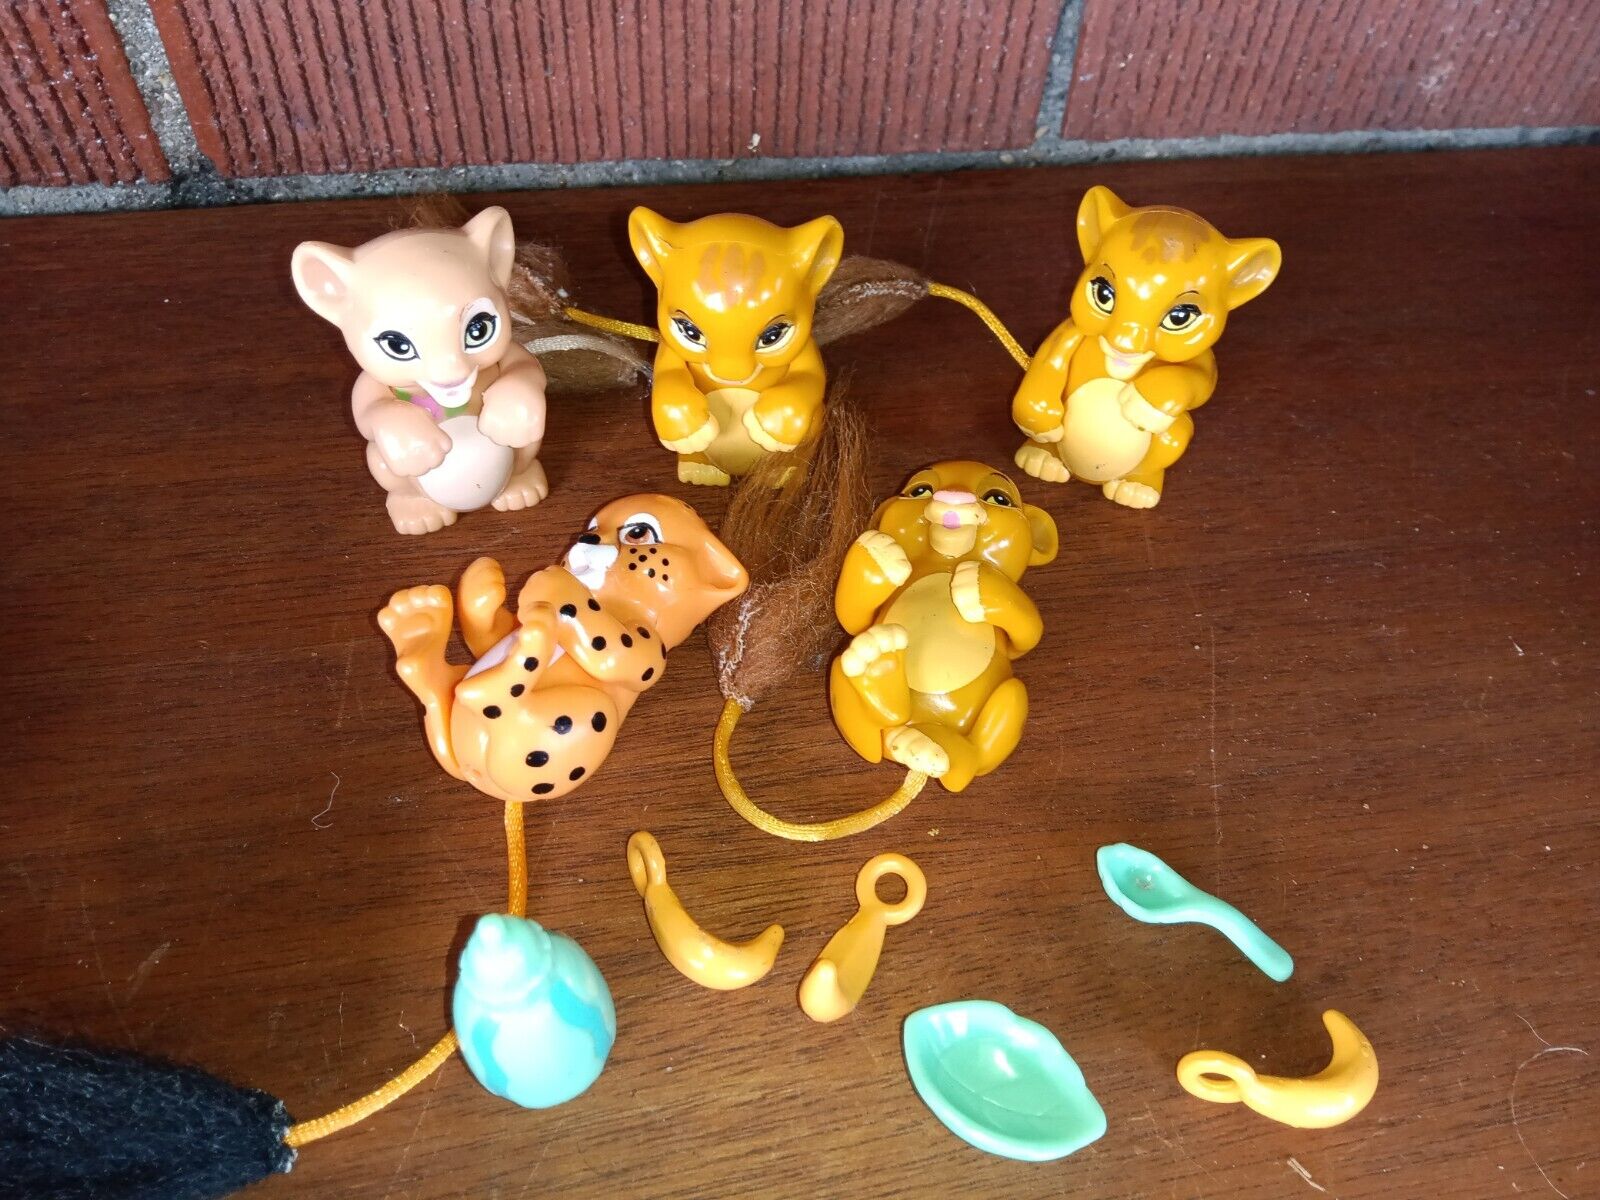 Disney Lion King Naptime Jungle Friend Babies Figures Lot 1994 Mattel